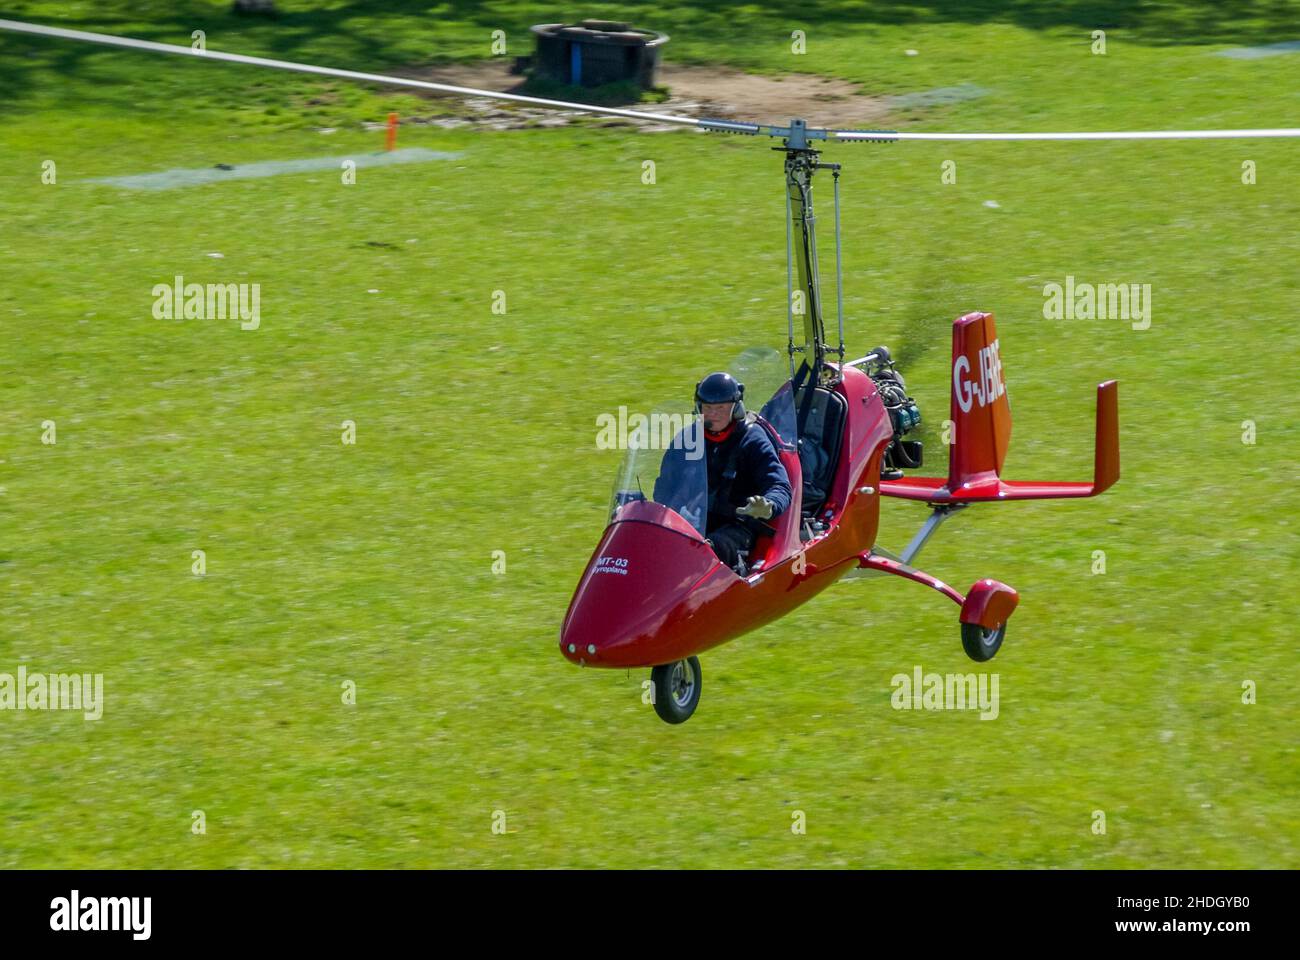 AutoGyro MT-03, MTOsport, autogyro G-JBRE décollage de Henham Park, piste d'atterrissage en herbe de la campagne du Suffolk.Autogyro allemand, par RotorSport UK MT-03 Banque D'Images